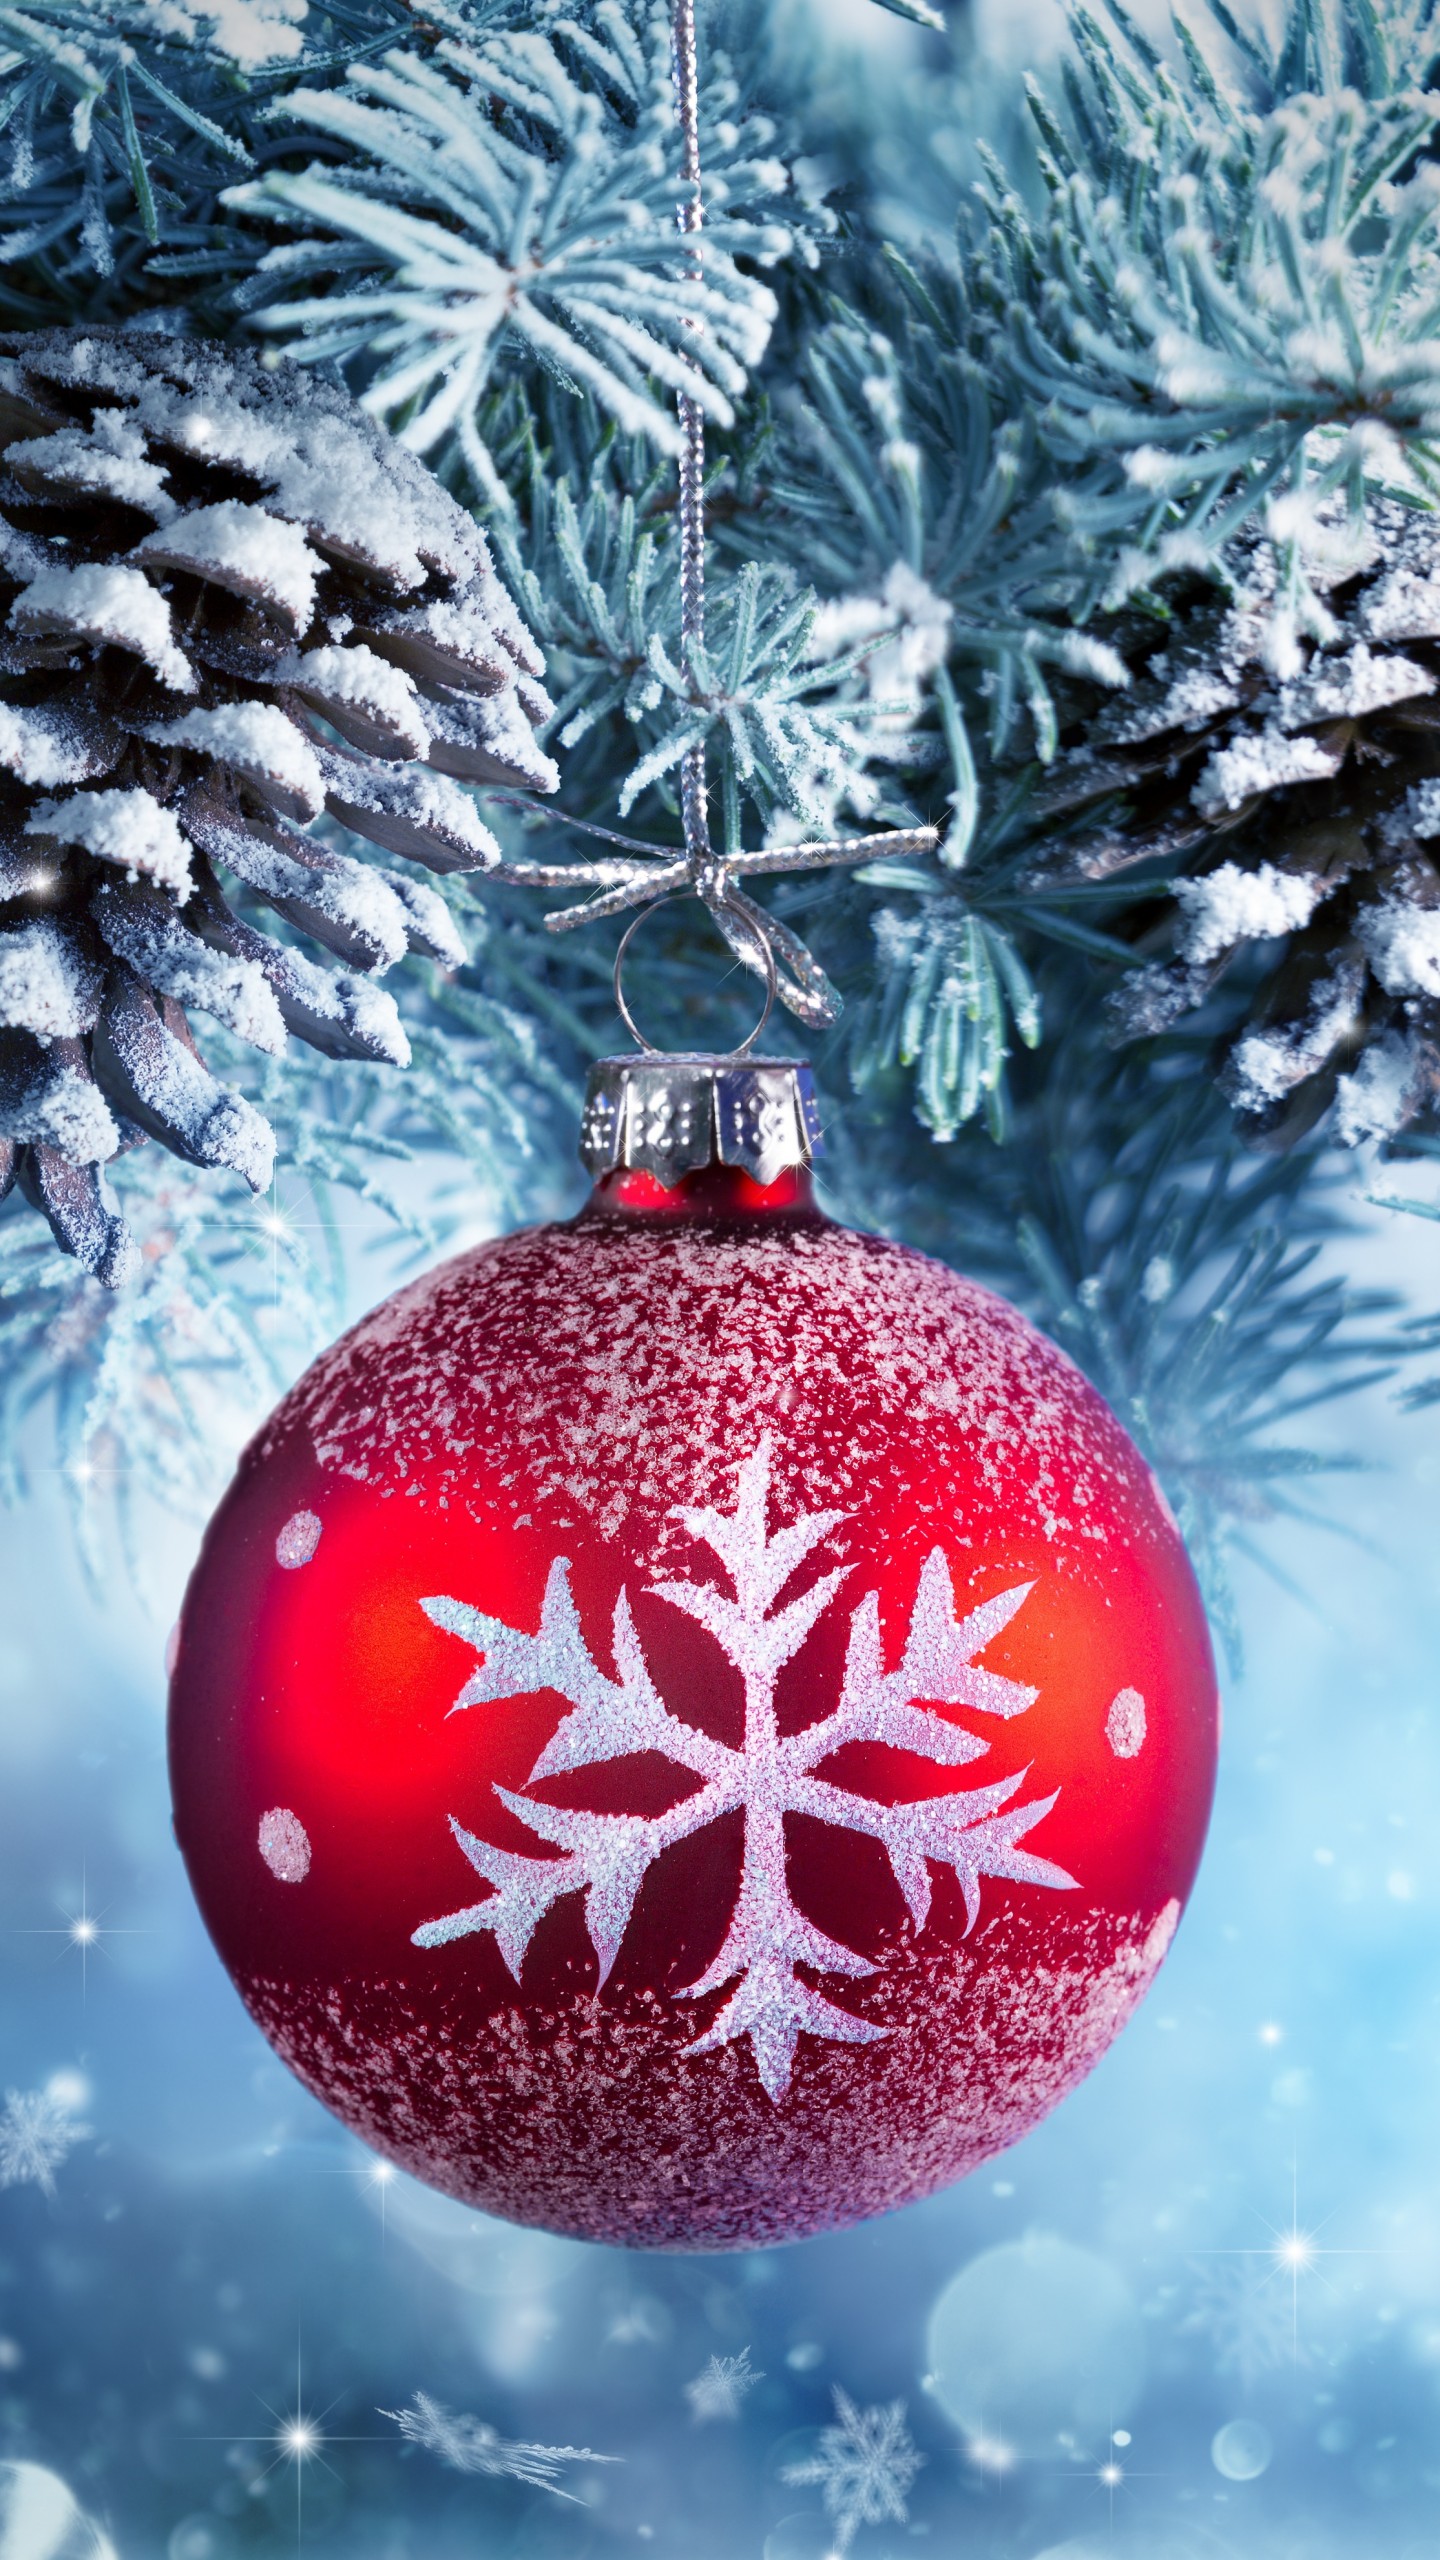 christmas ornament wallpaper,christmas ornament,christmas decoration,holiday ornament,ornament,christmas